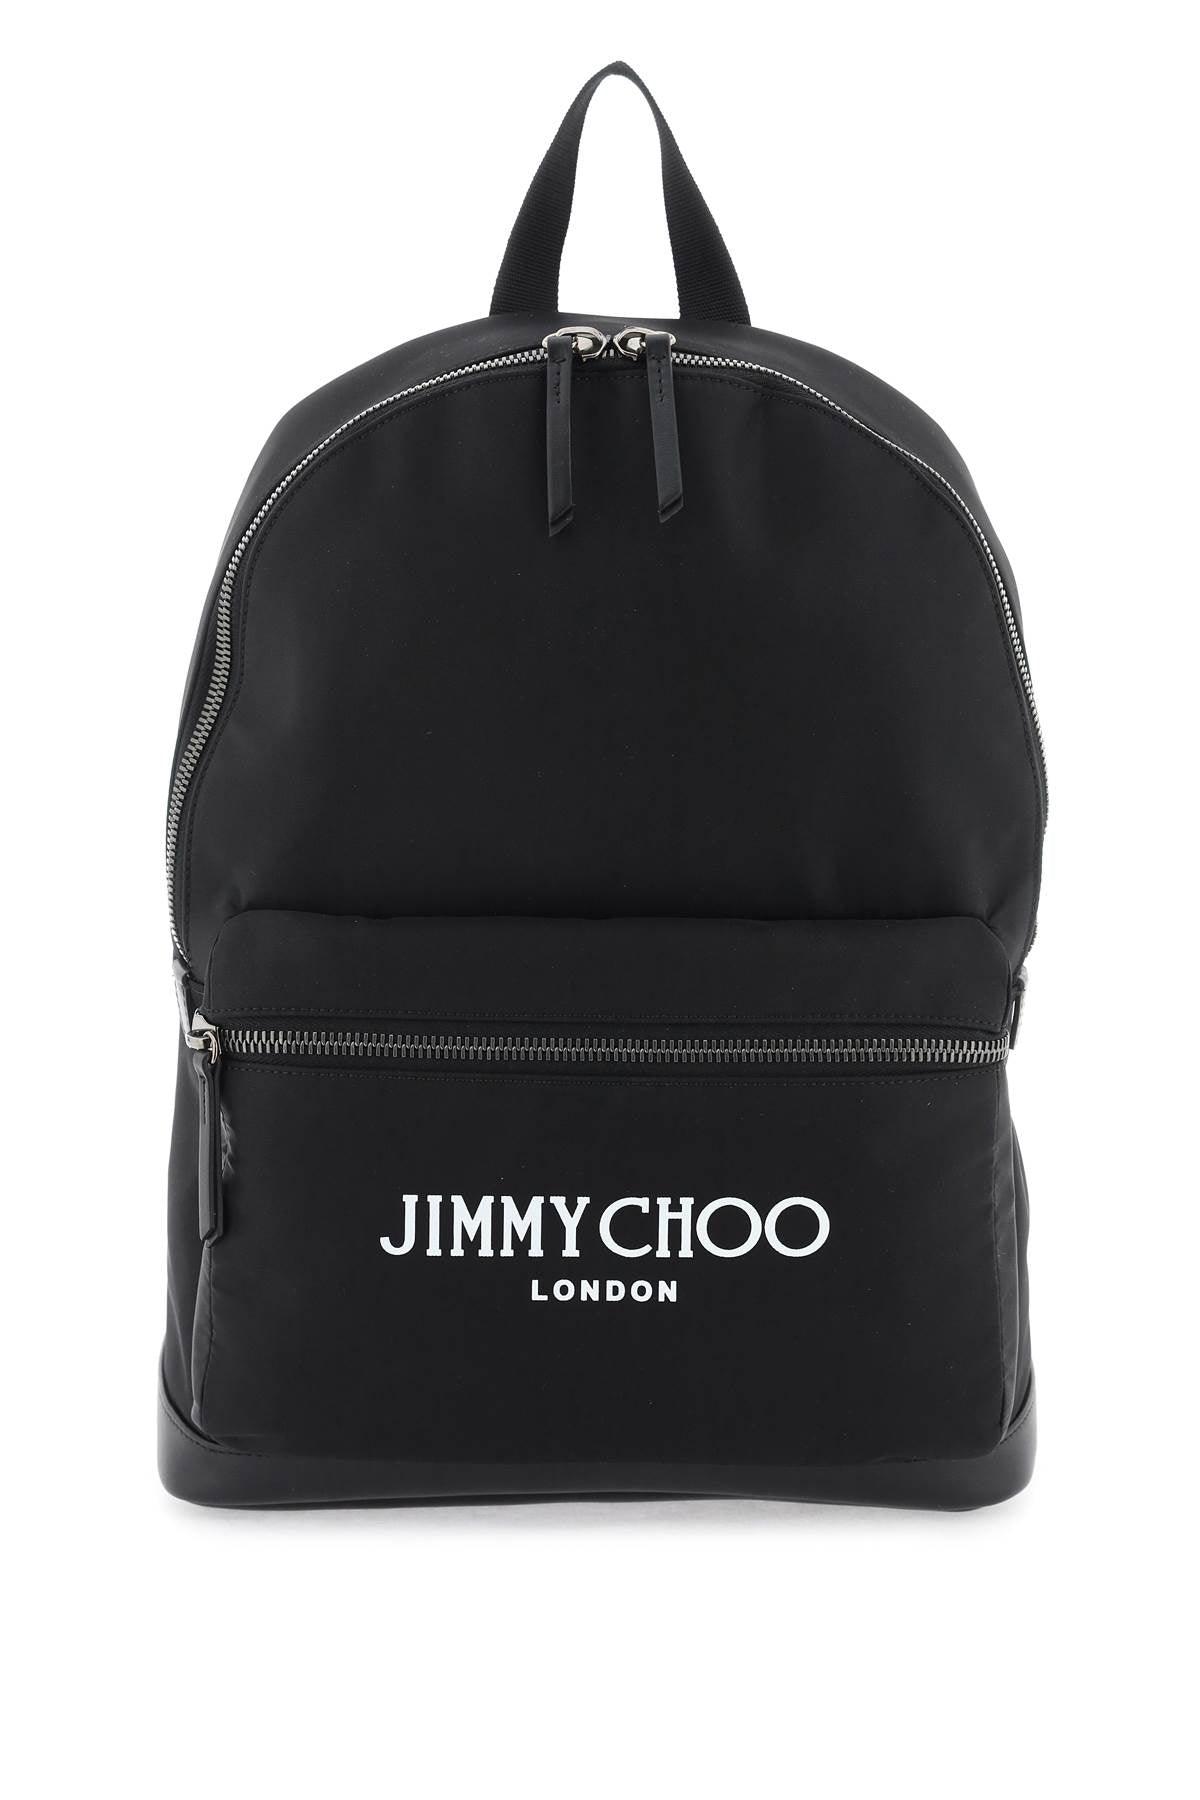 Jimmy Choo Wilmer Backpack - JOHN JULIA